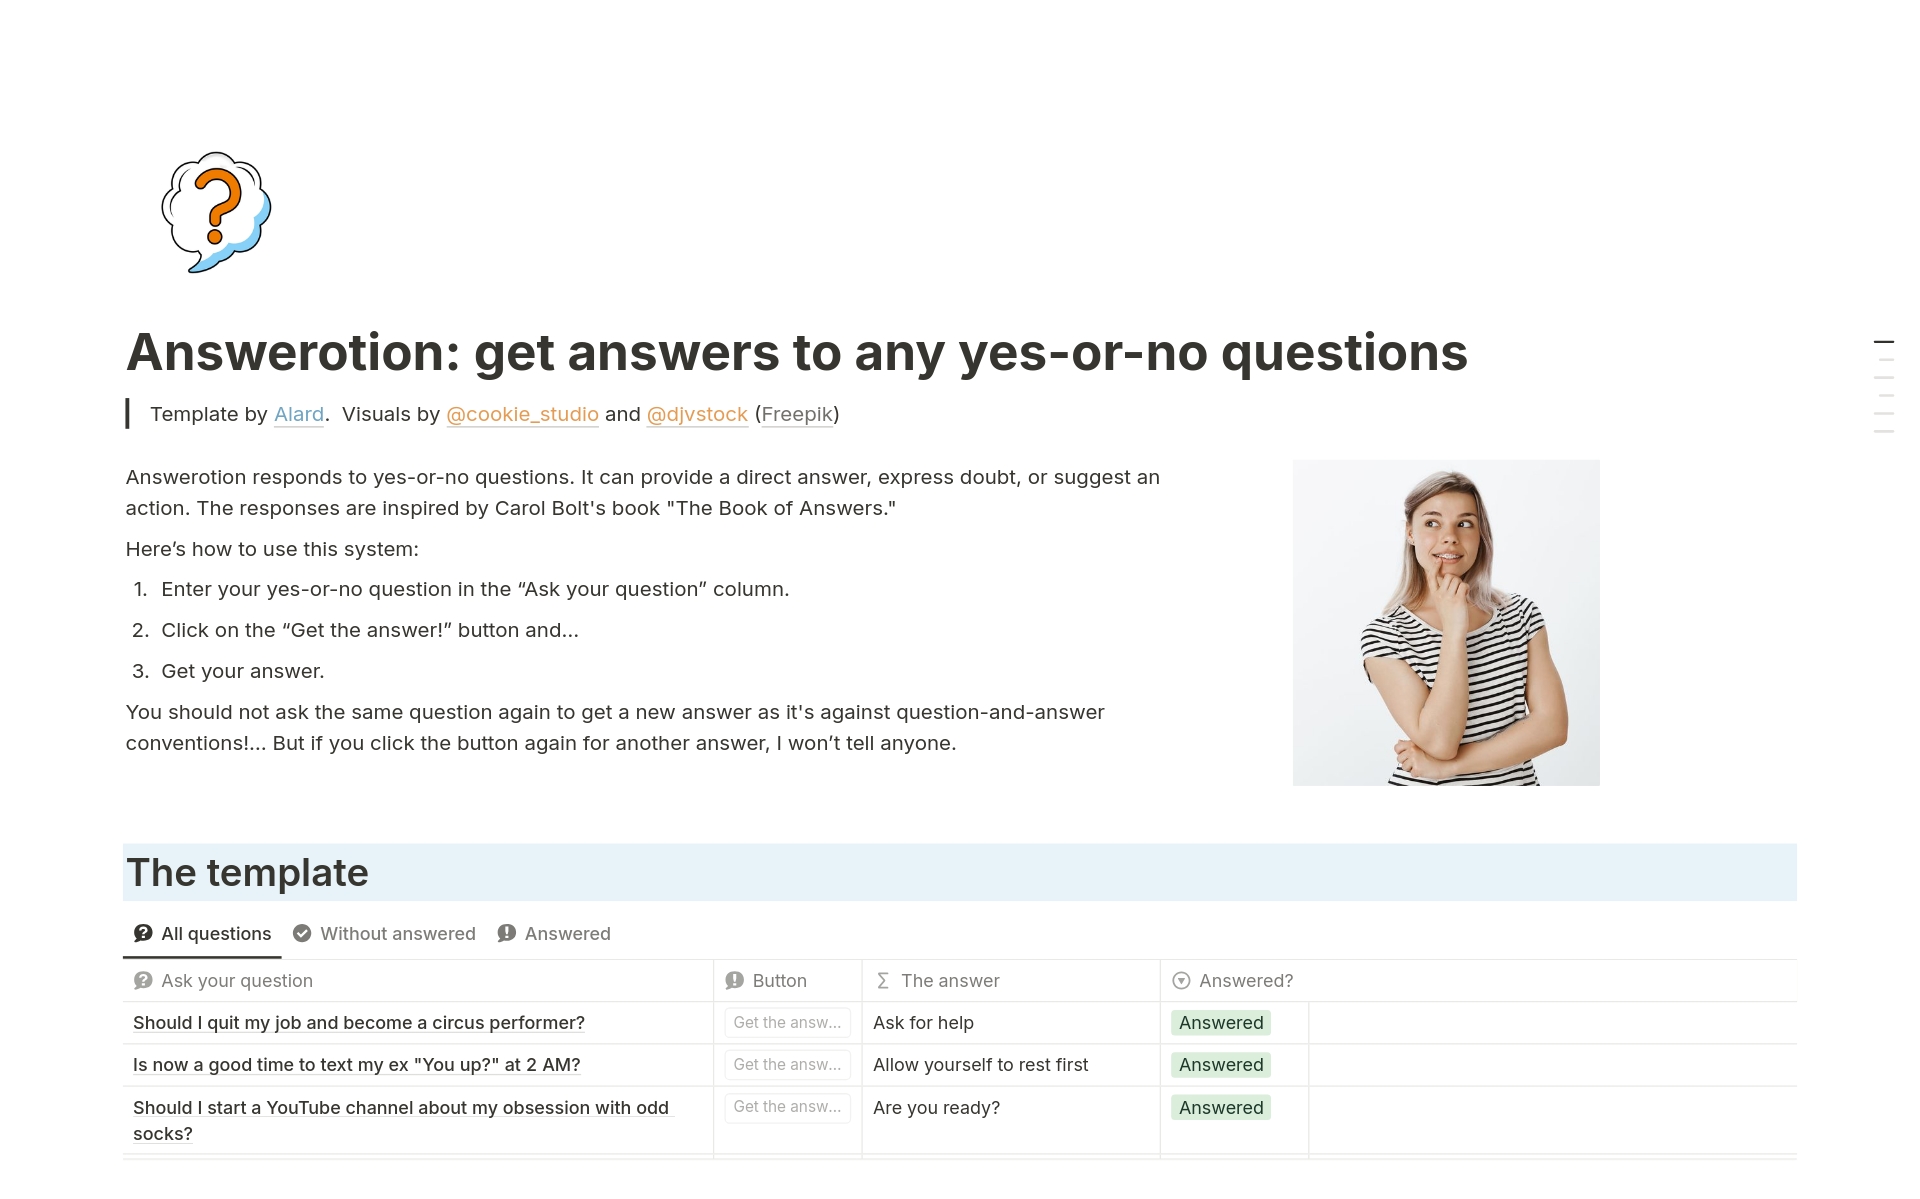 Vista previa de plantilla para Answerotion: get answers to yes-or-no questions